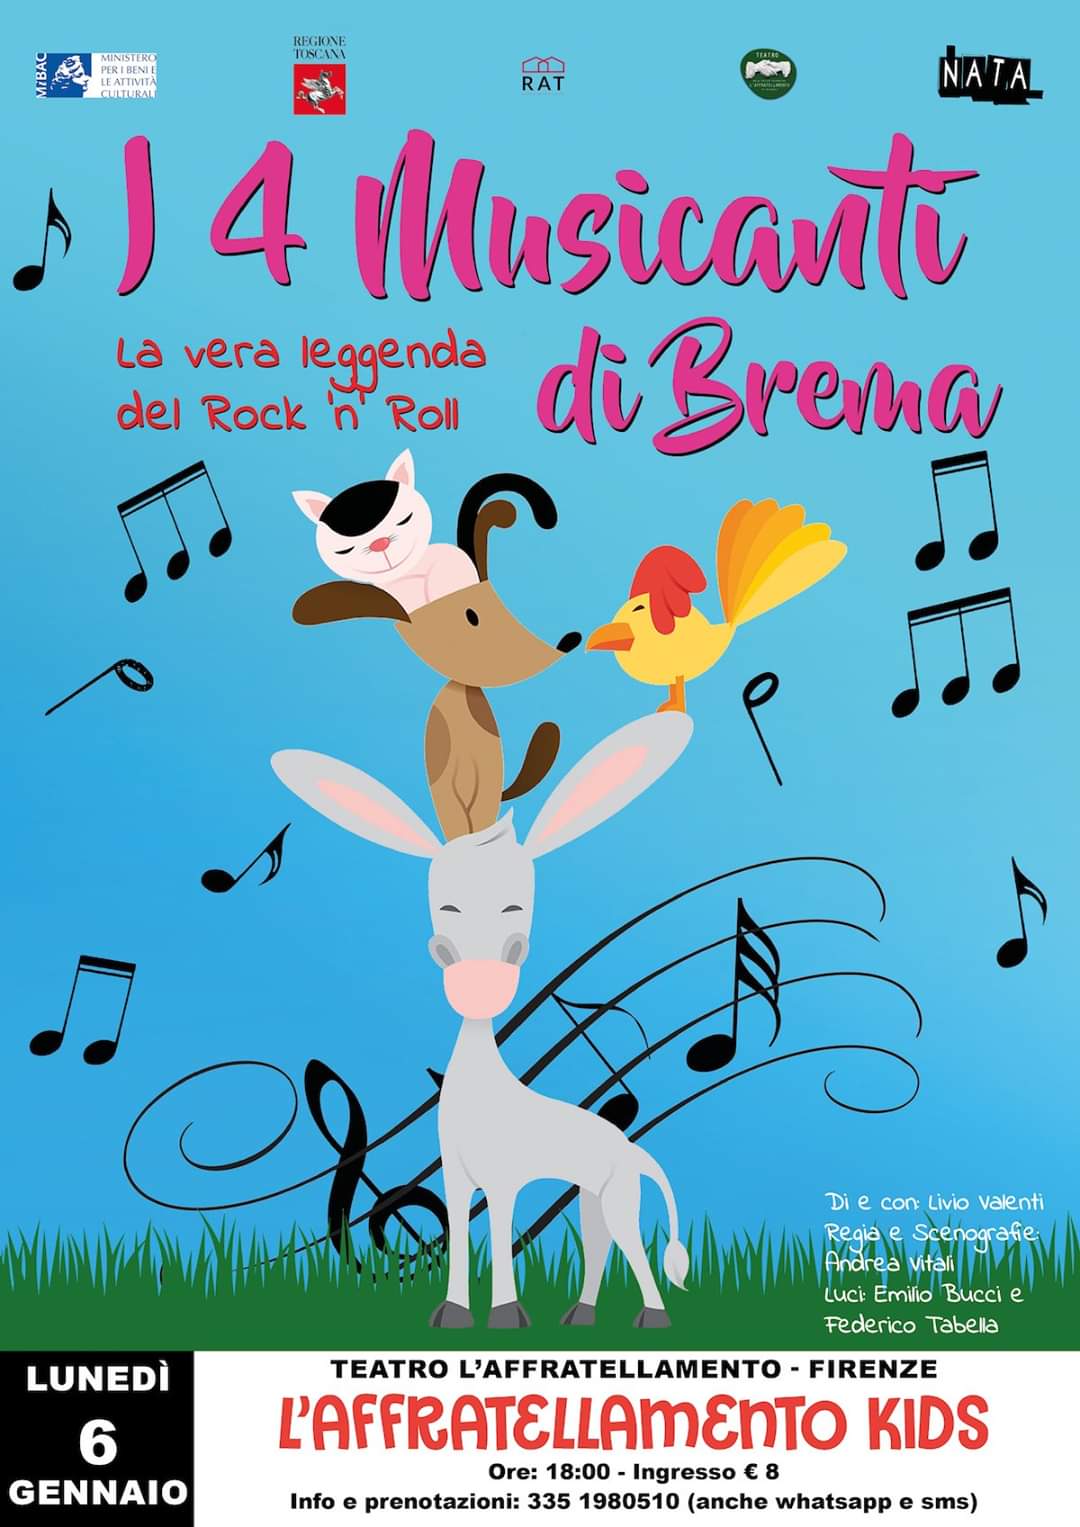 La compagnia NATA Teatro arriva a Firenze con lo spettacolo  “I quattro musicanti di Brema”